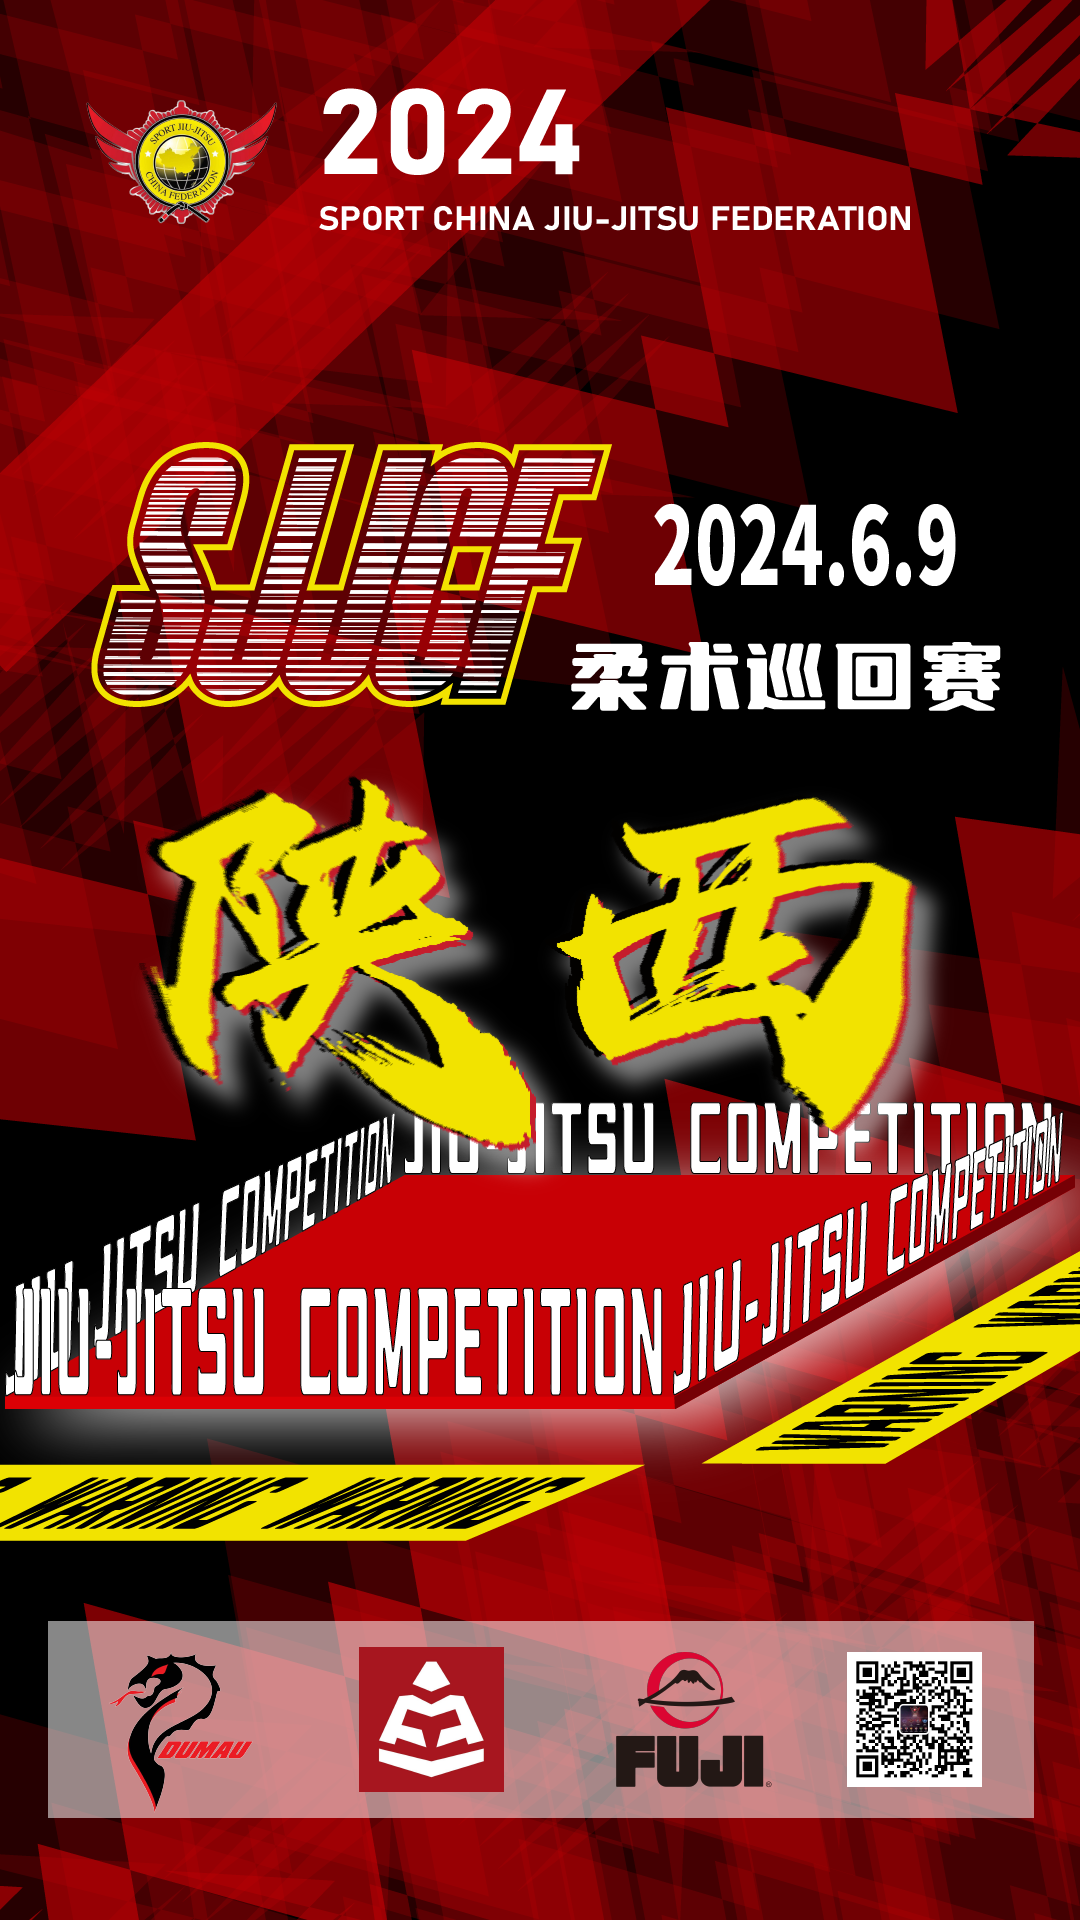 sjjcf shanxi no-gi championship 2024. (no-gi event)